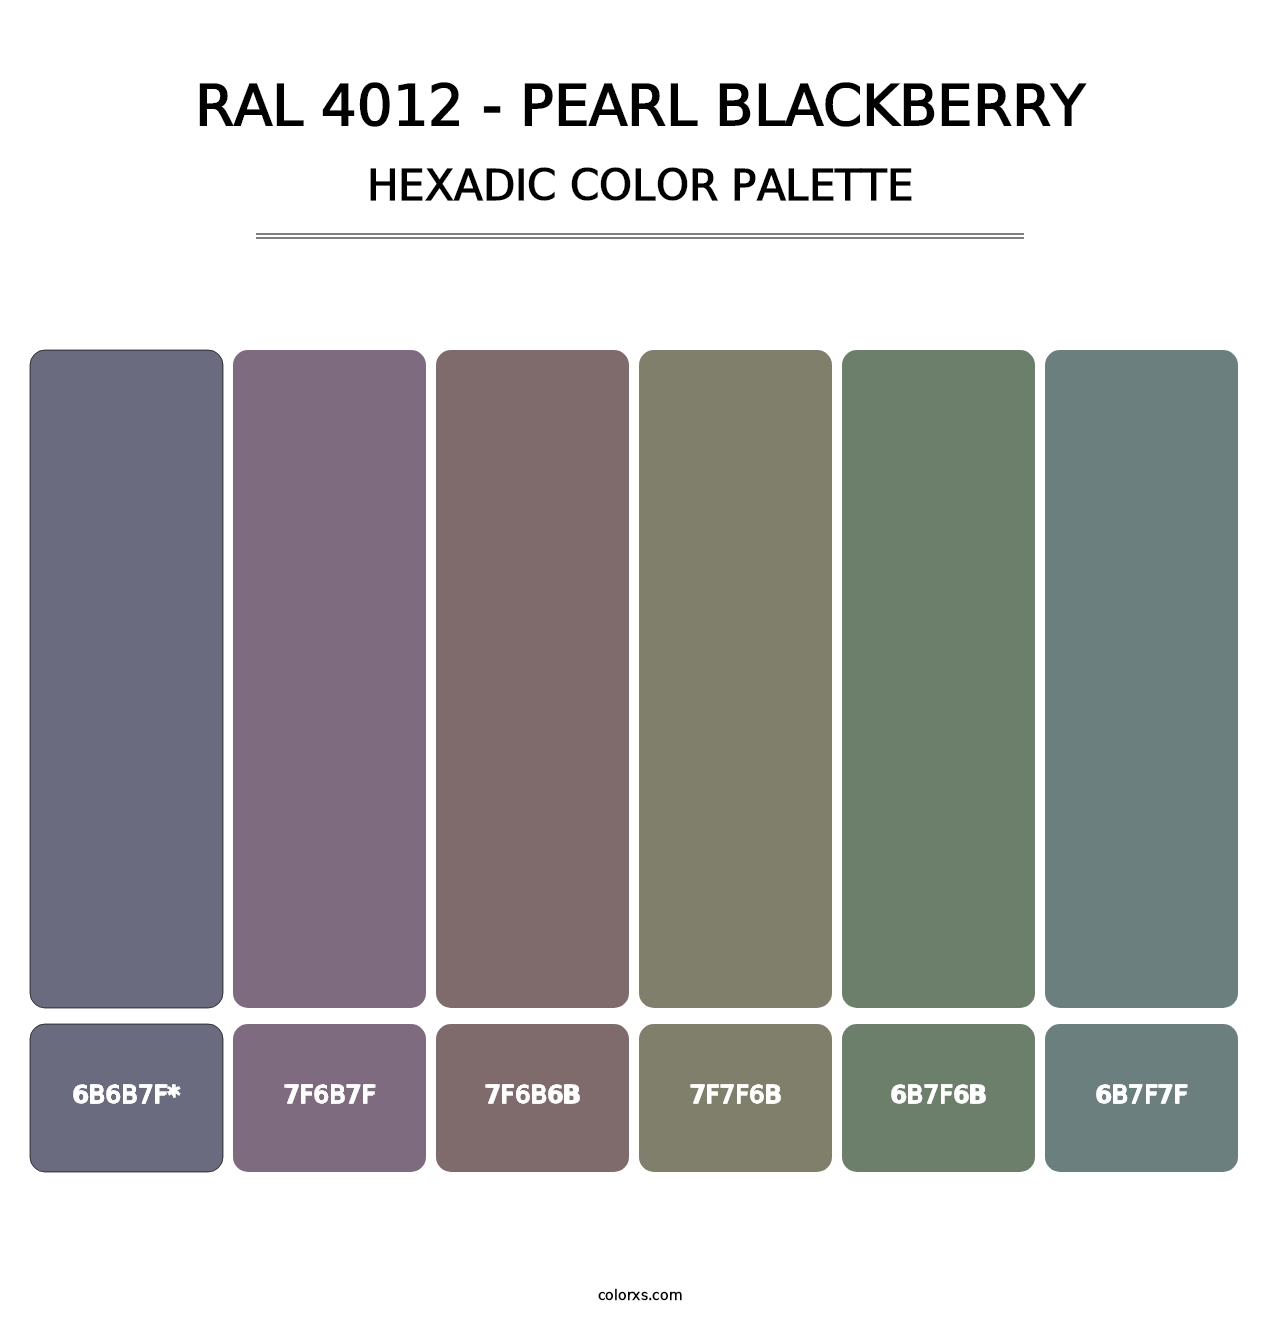 RAL 4012 - Pearl Blackberry - Hexadic Color Palette